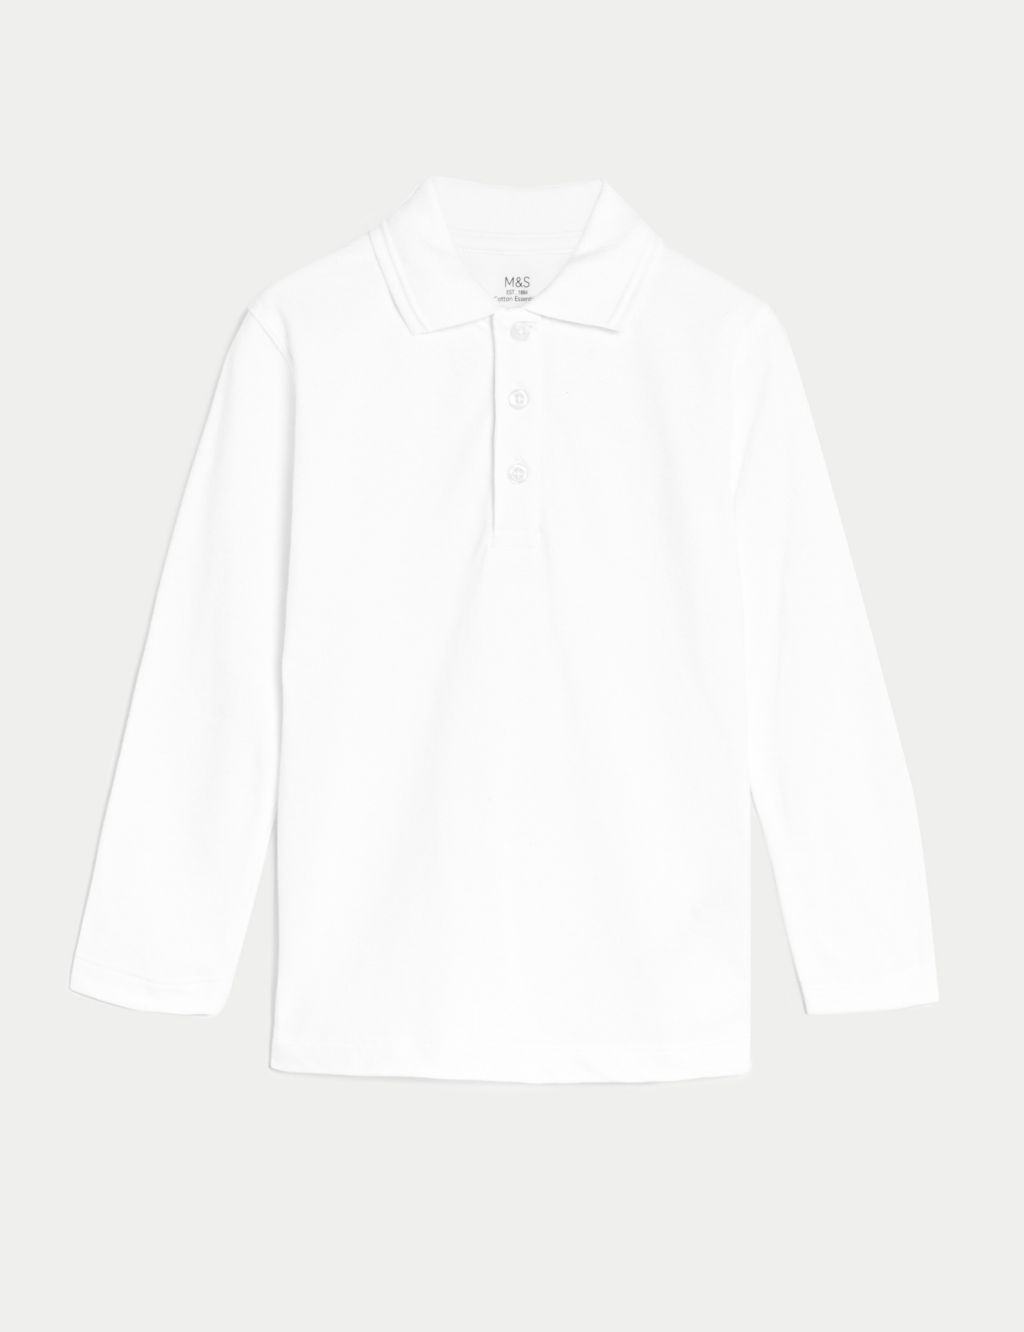 Unisex Long Sleeve Polo Shirt (2-16 Yrs) image 2